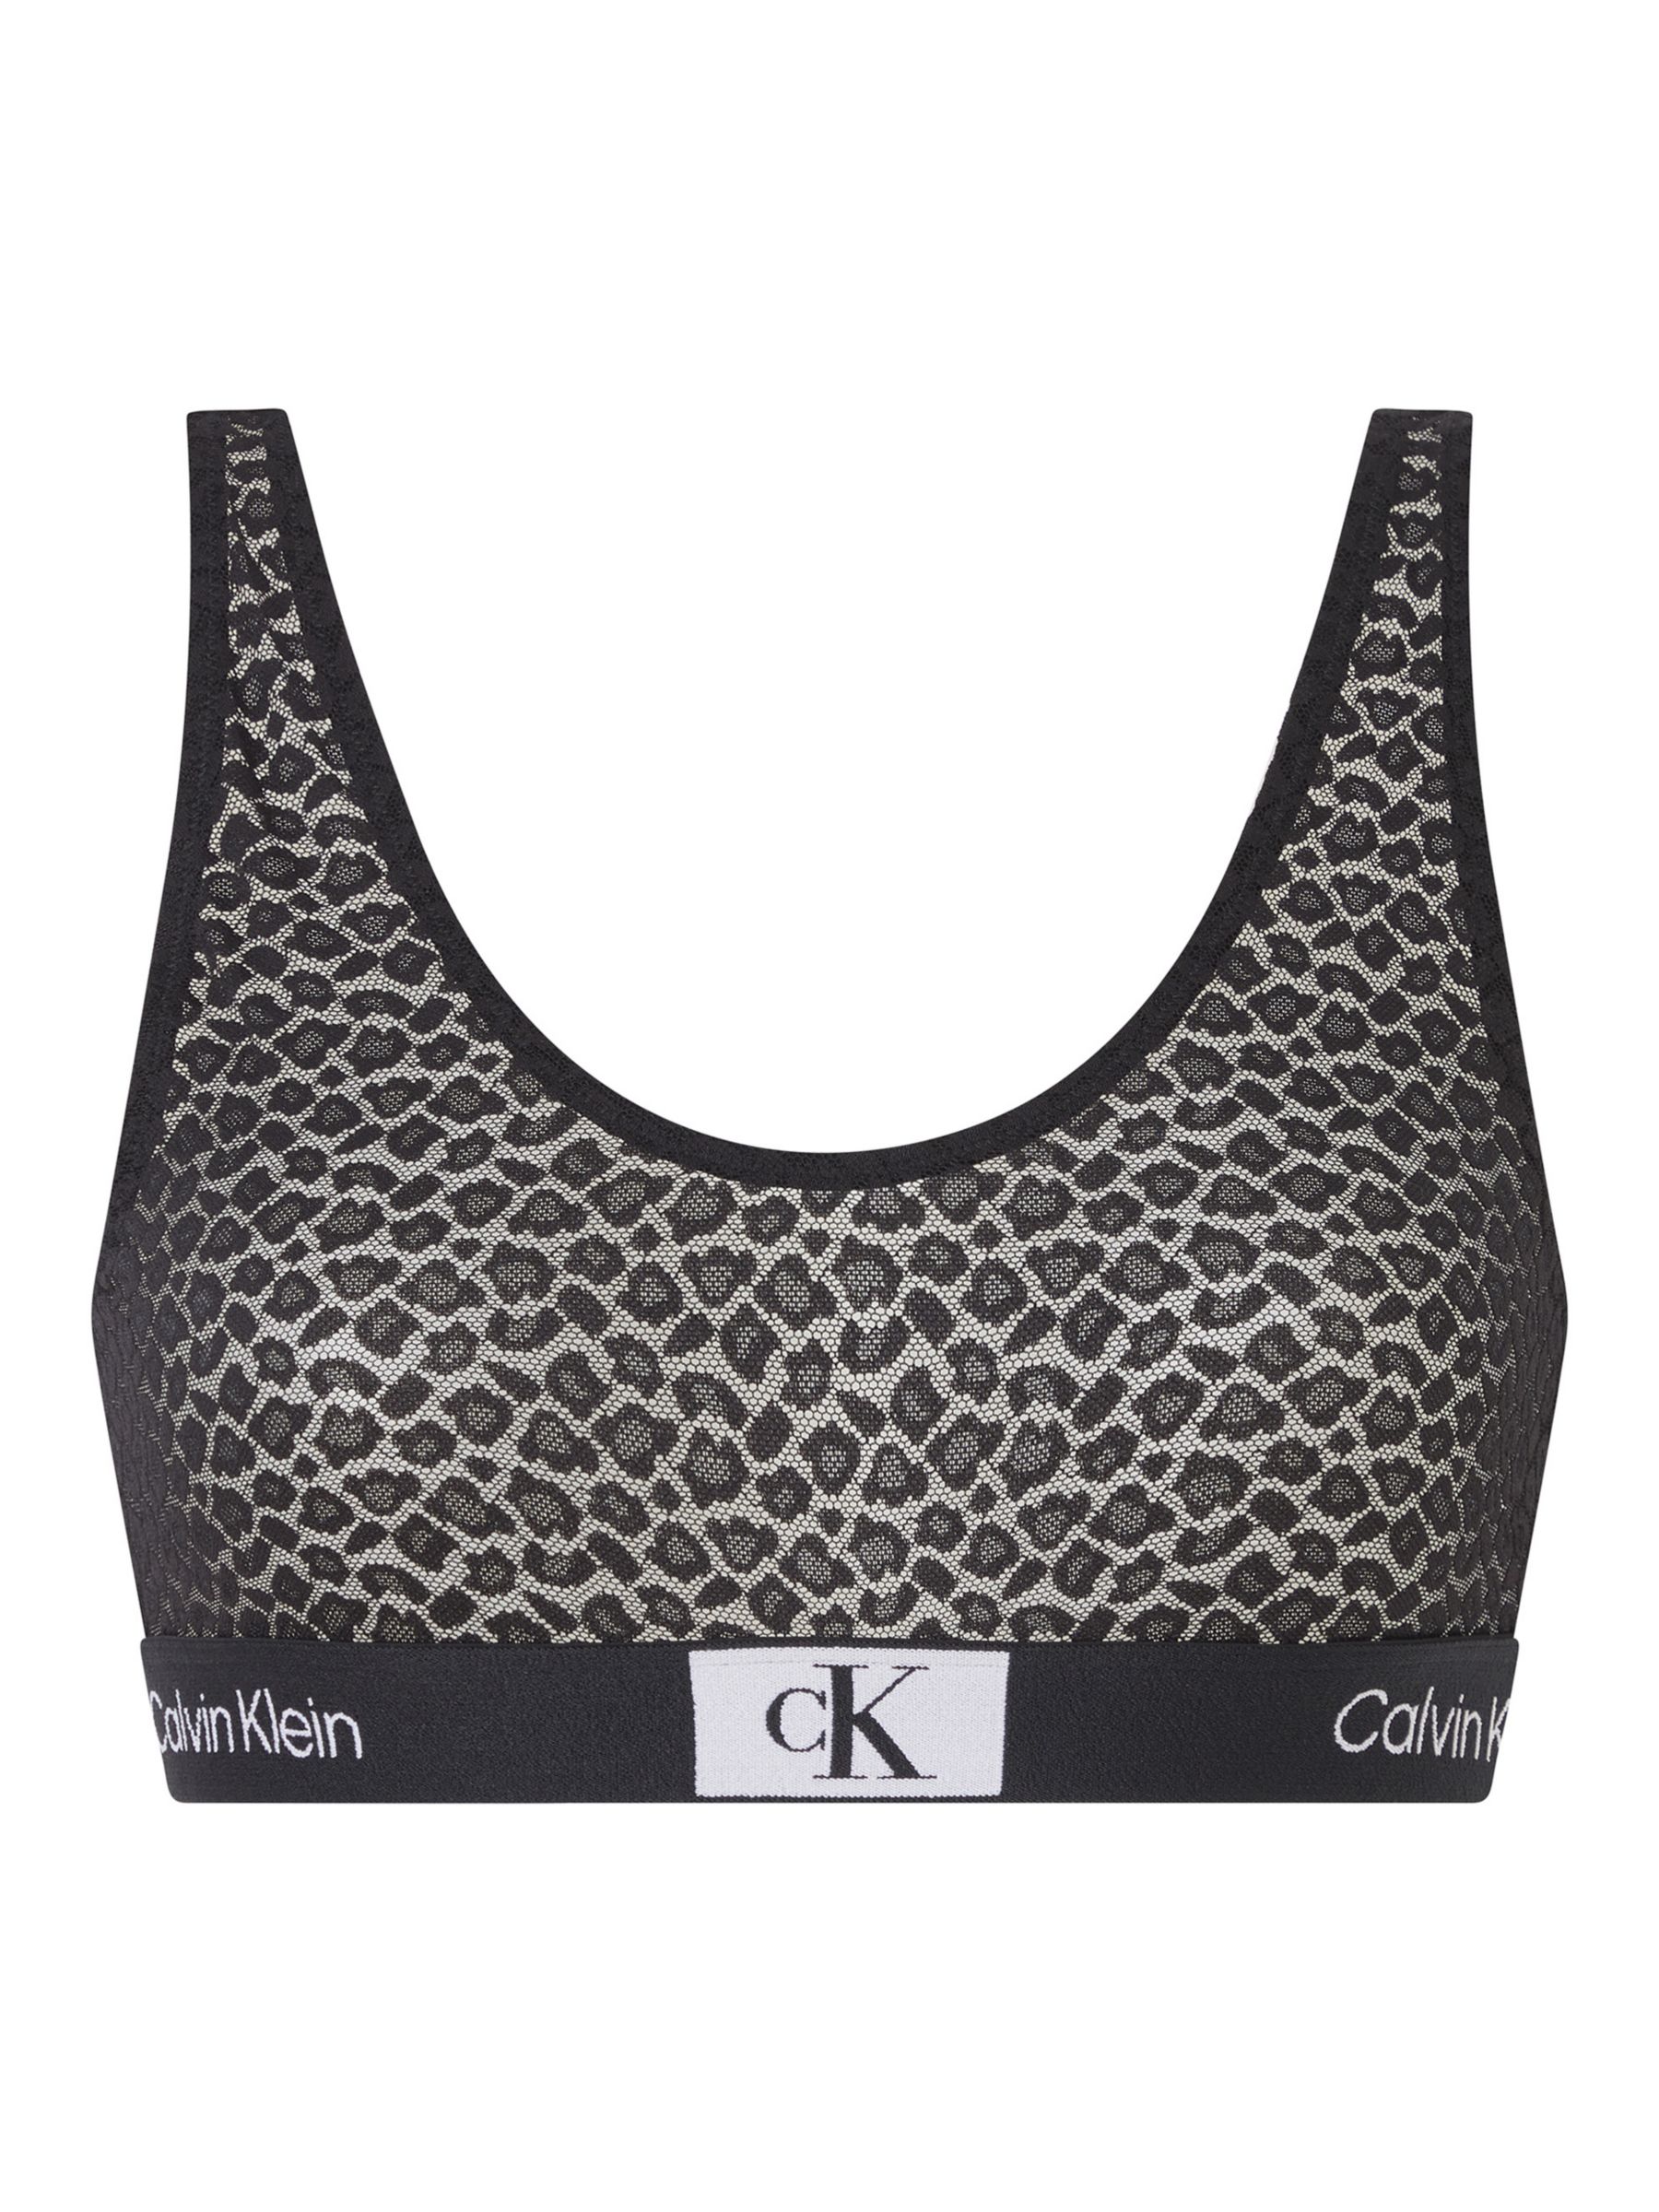 Calvin Klein 1996 Animal Lace Bralette, Black, XS